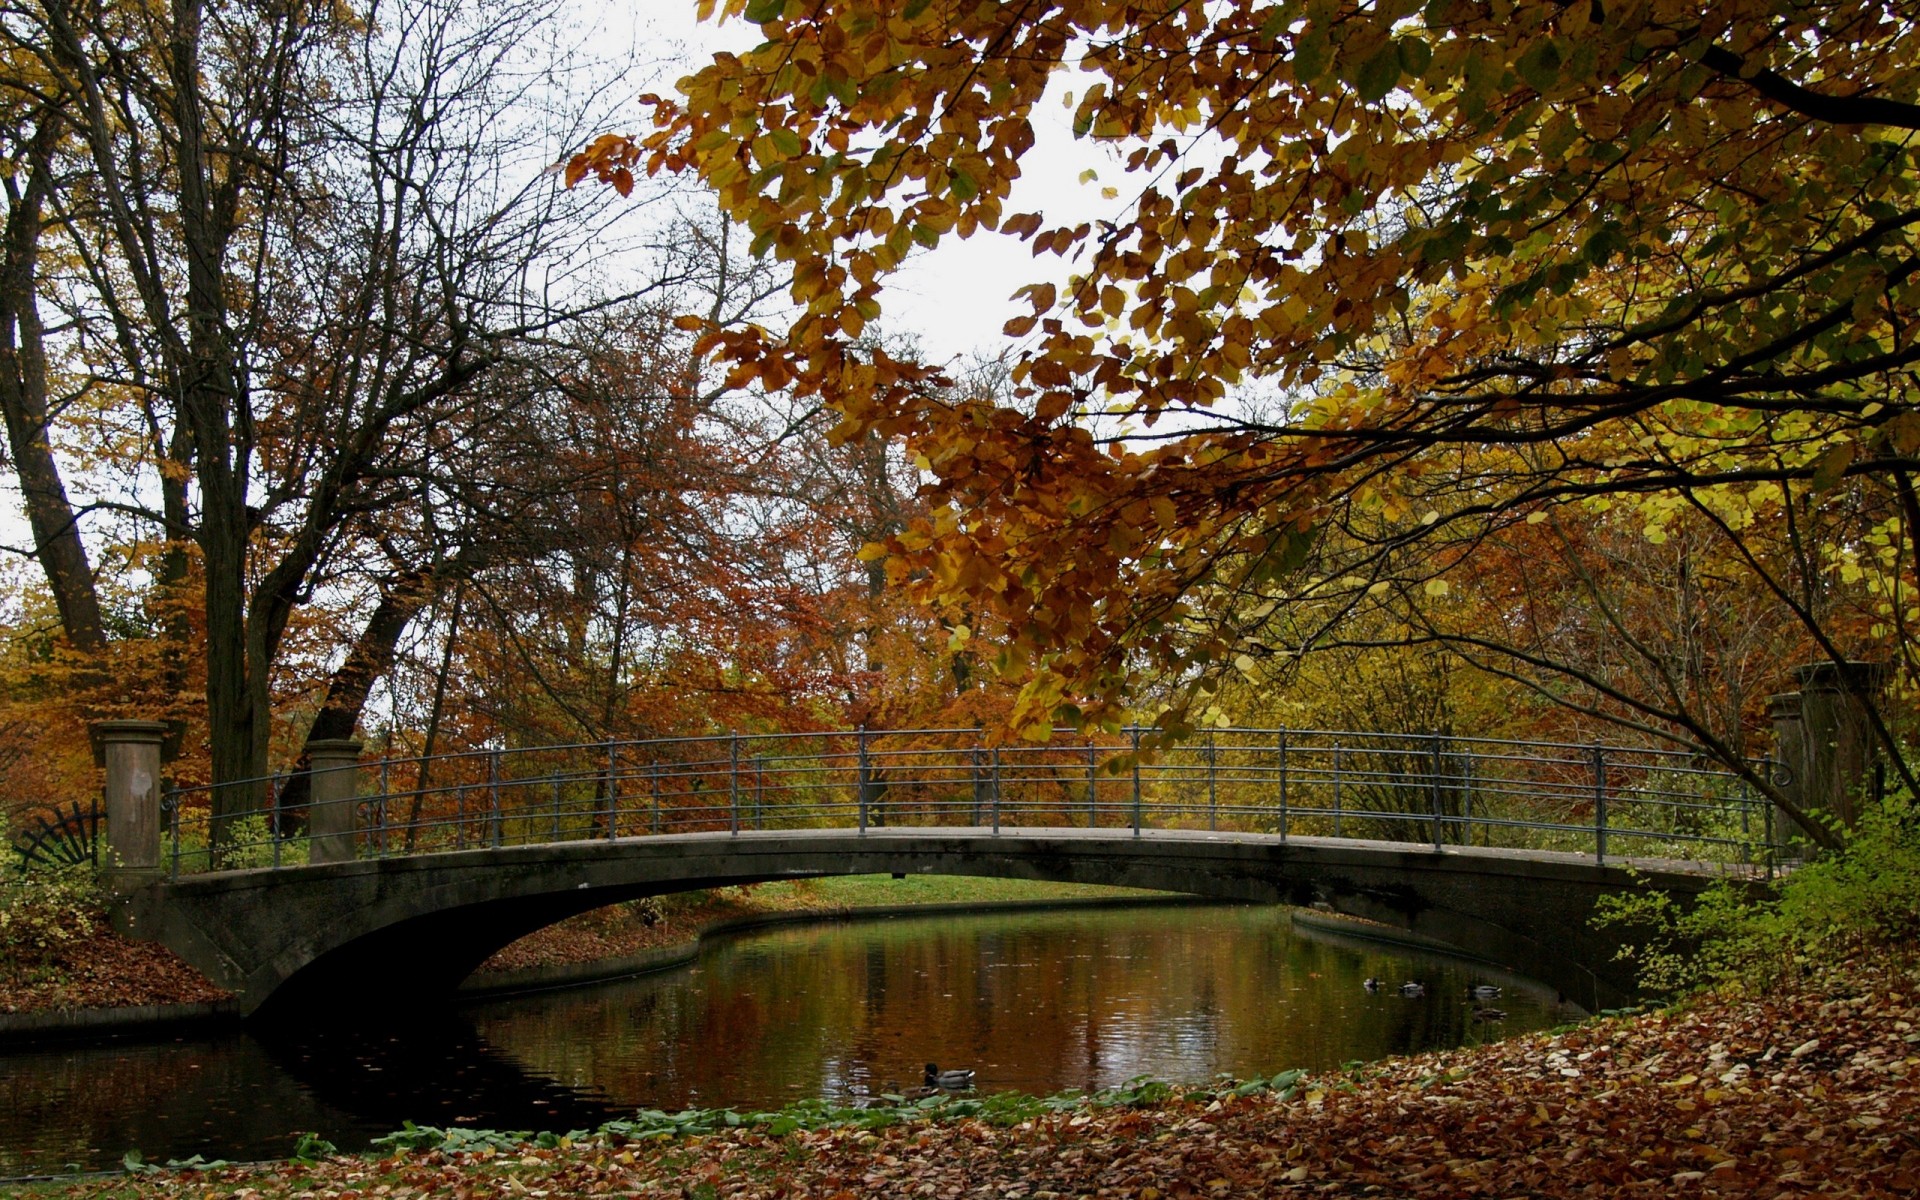 осень осень лист дерево природа кленовый пейзаж древесины парк воды на открытом воздухе сезон река мост живописный среды